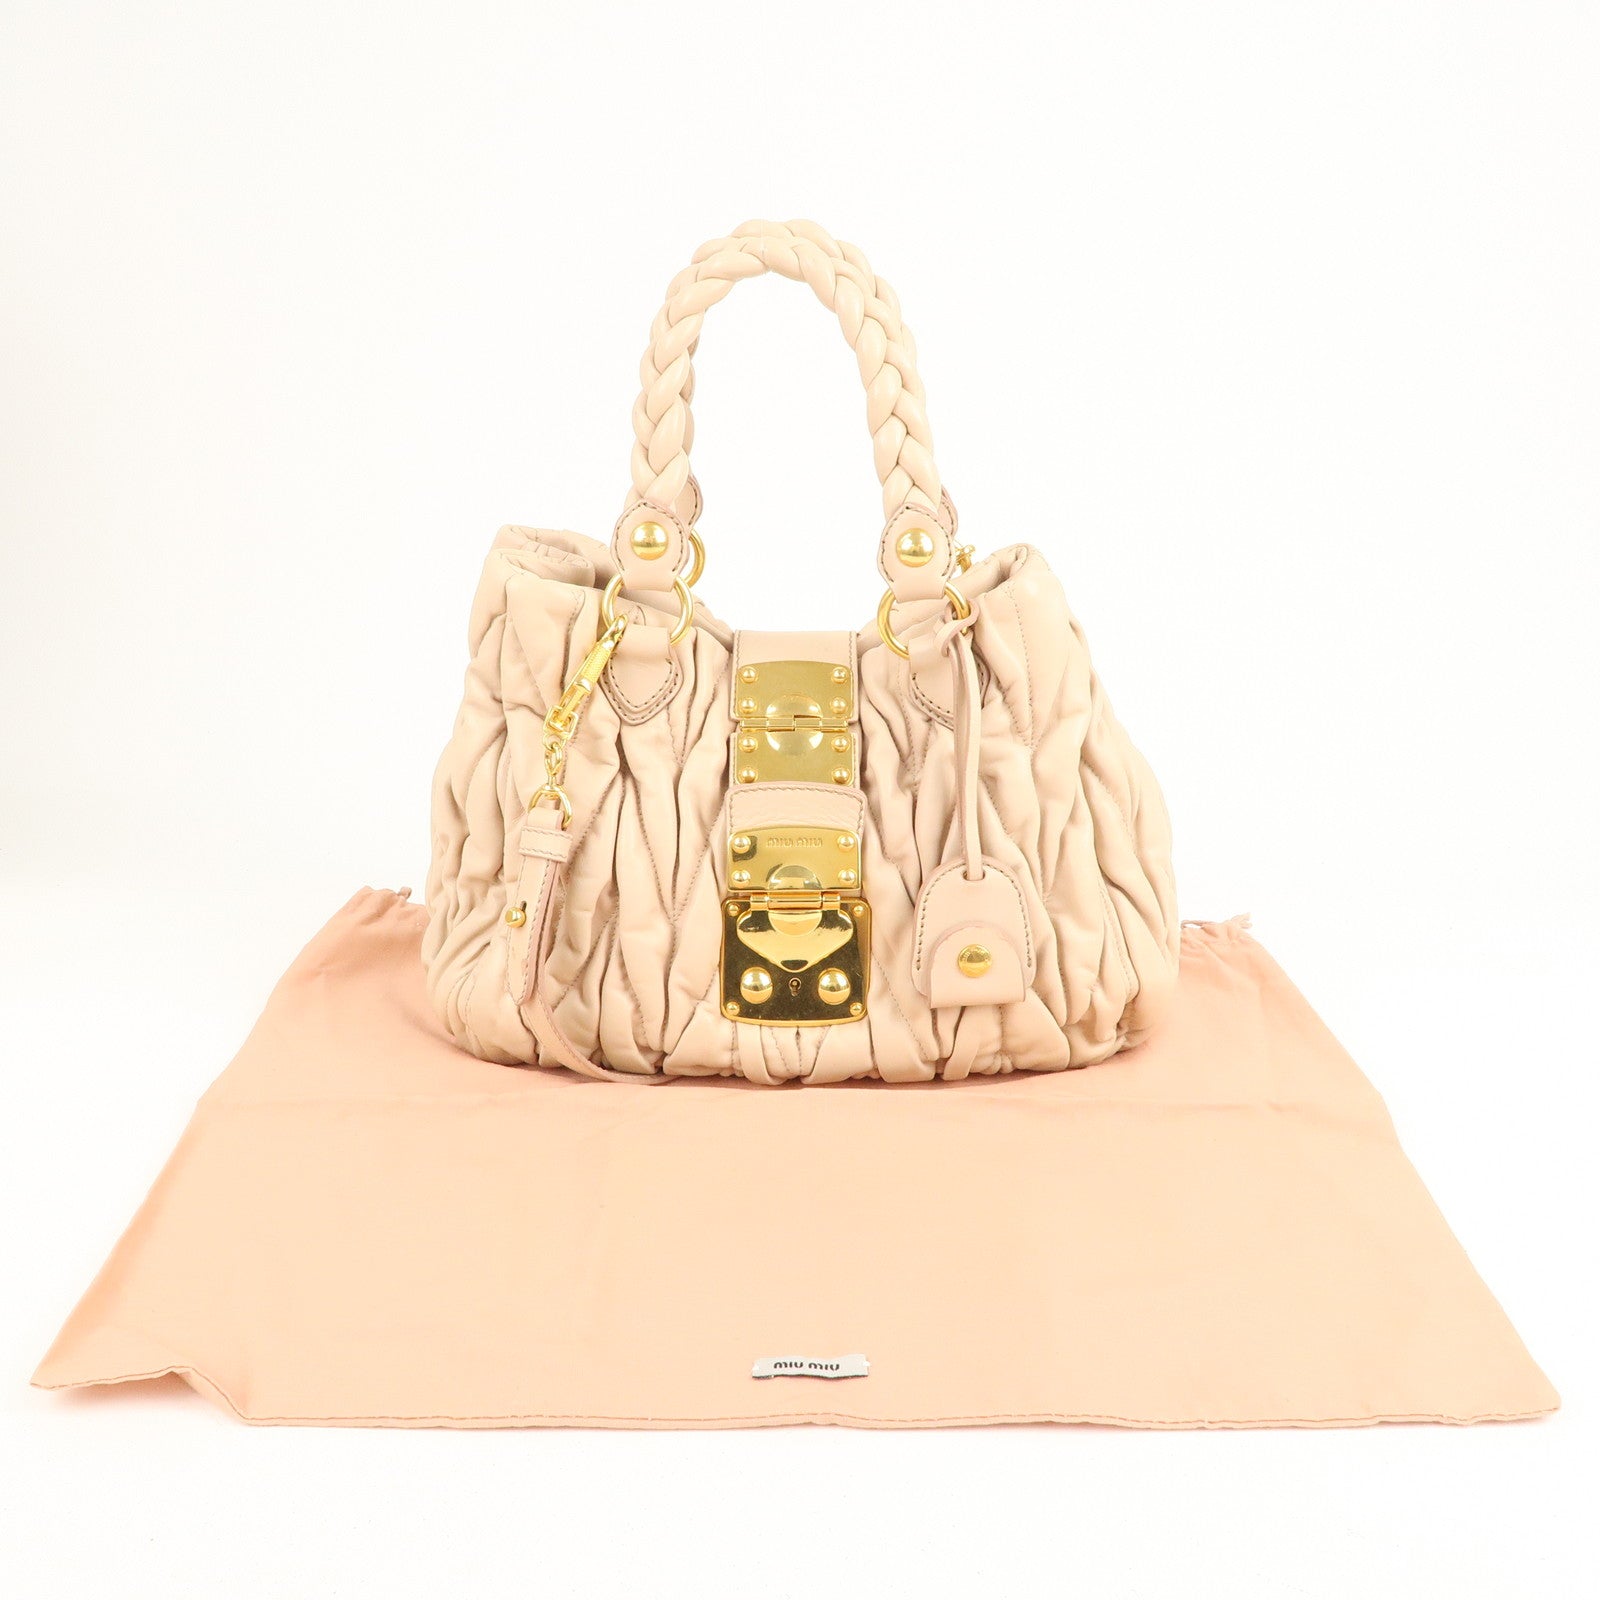 Miu Miu Hand Bag Leather 2way Pink Auction